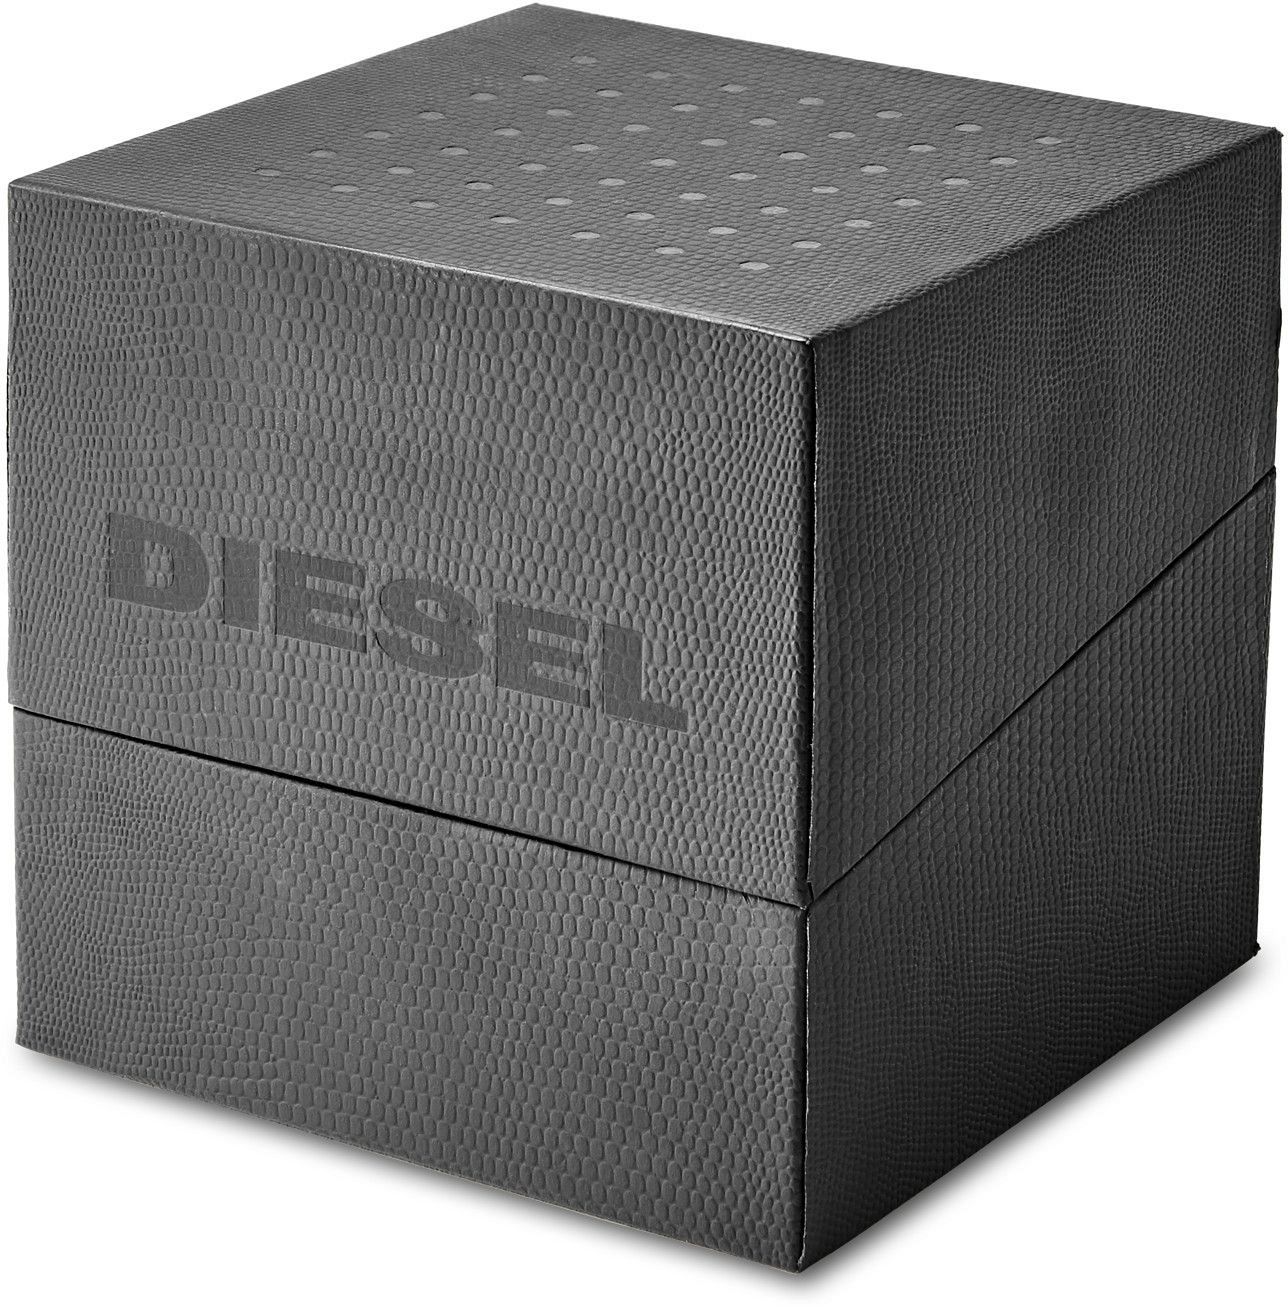 Diesel Dz1840 Erkek Kol Saati